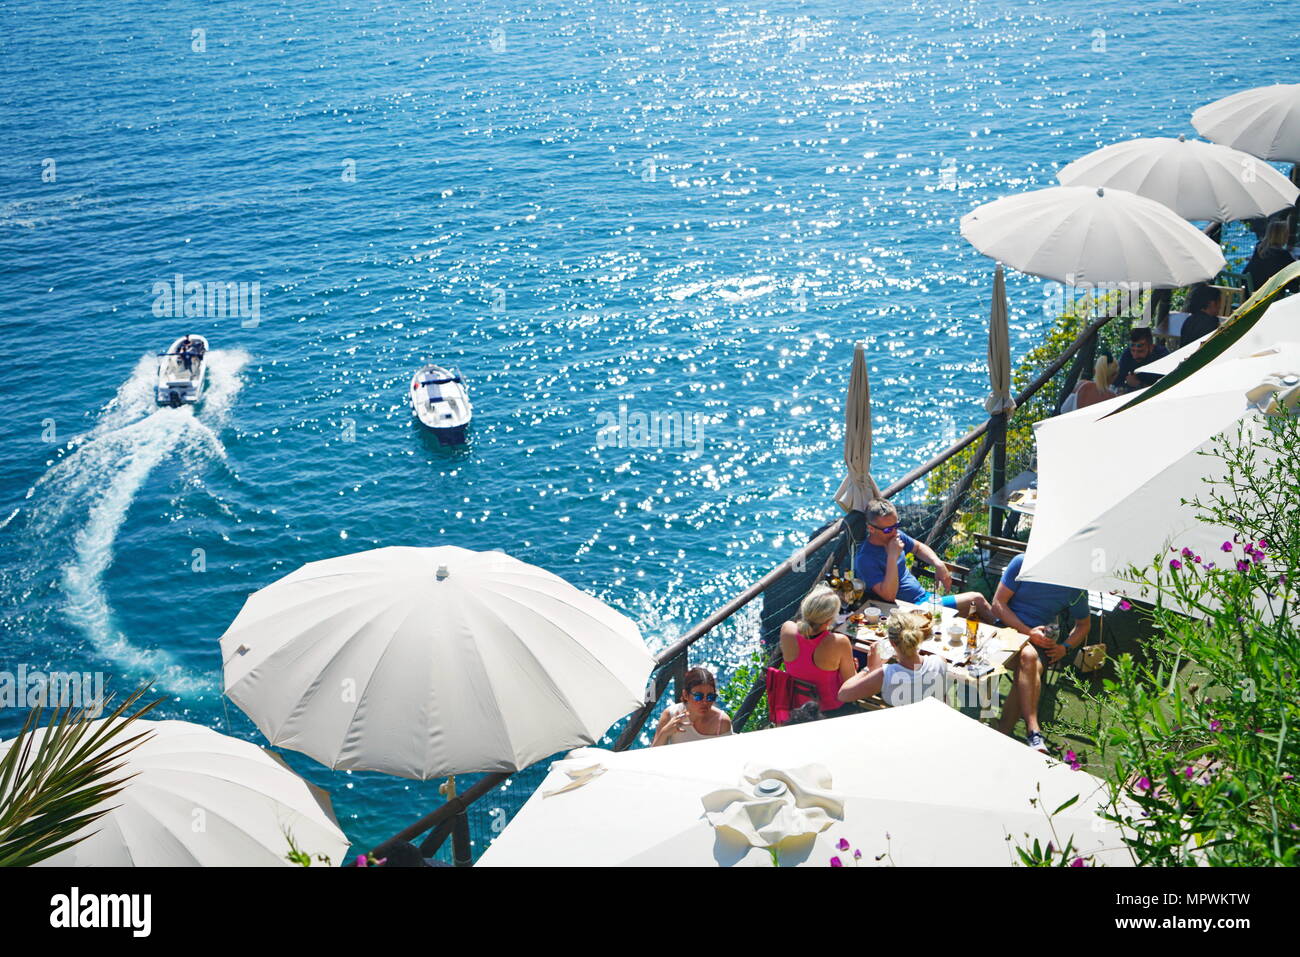 Bar Restaurant an der Küste von Cinque Terre Nationalpark in Italien. Manarola, Italien - April 2018 Stockfoto